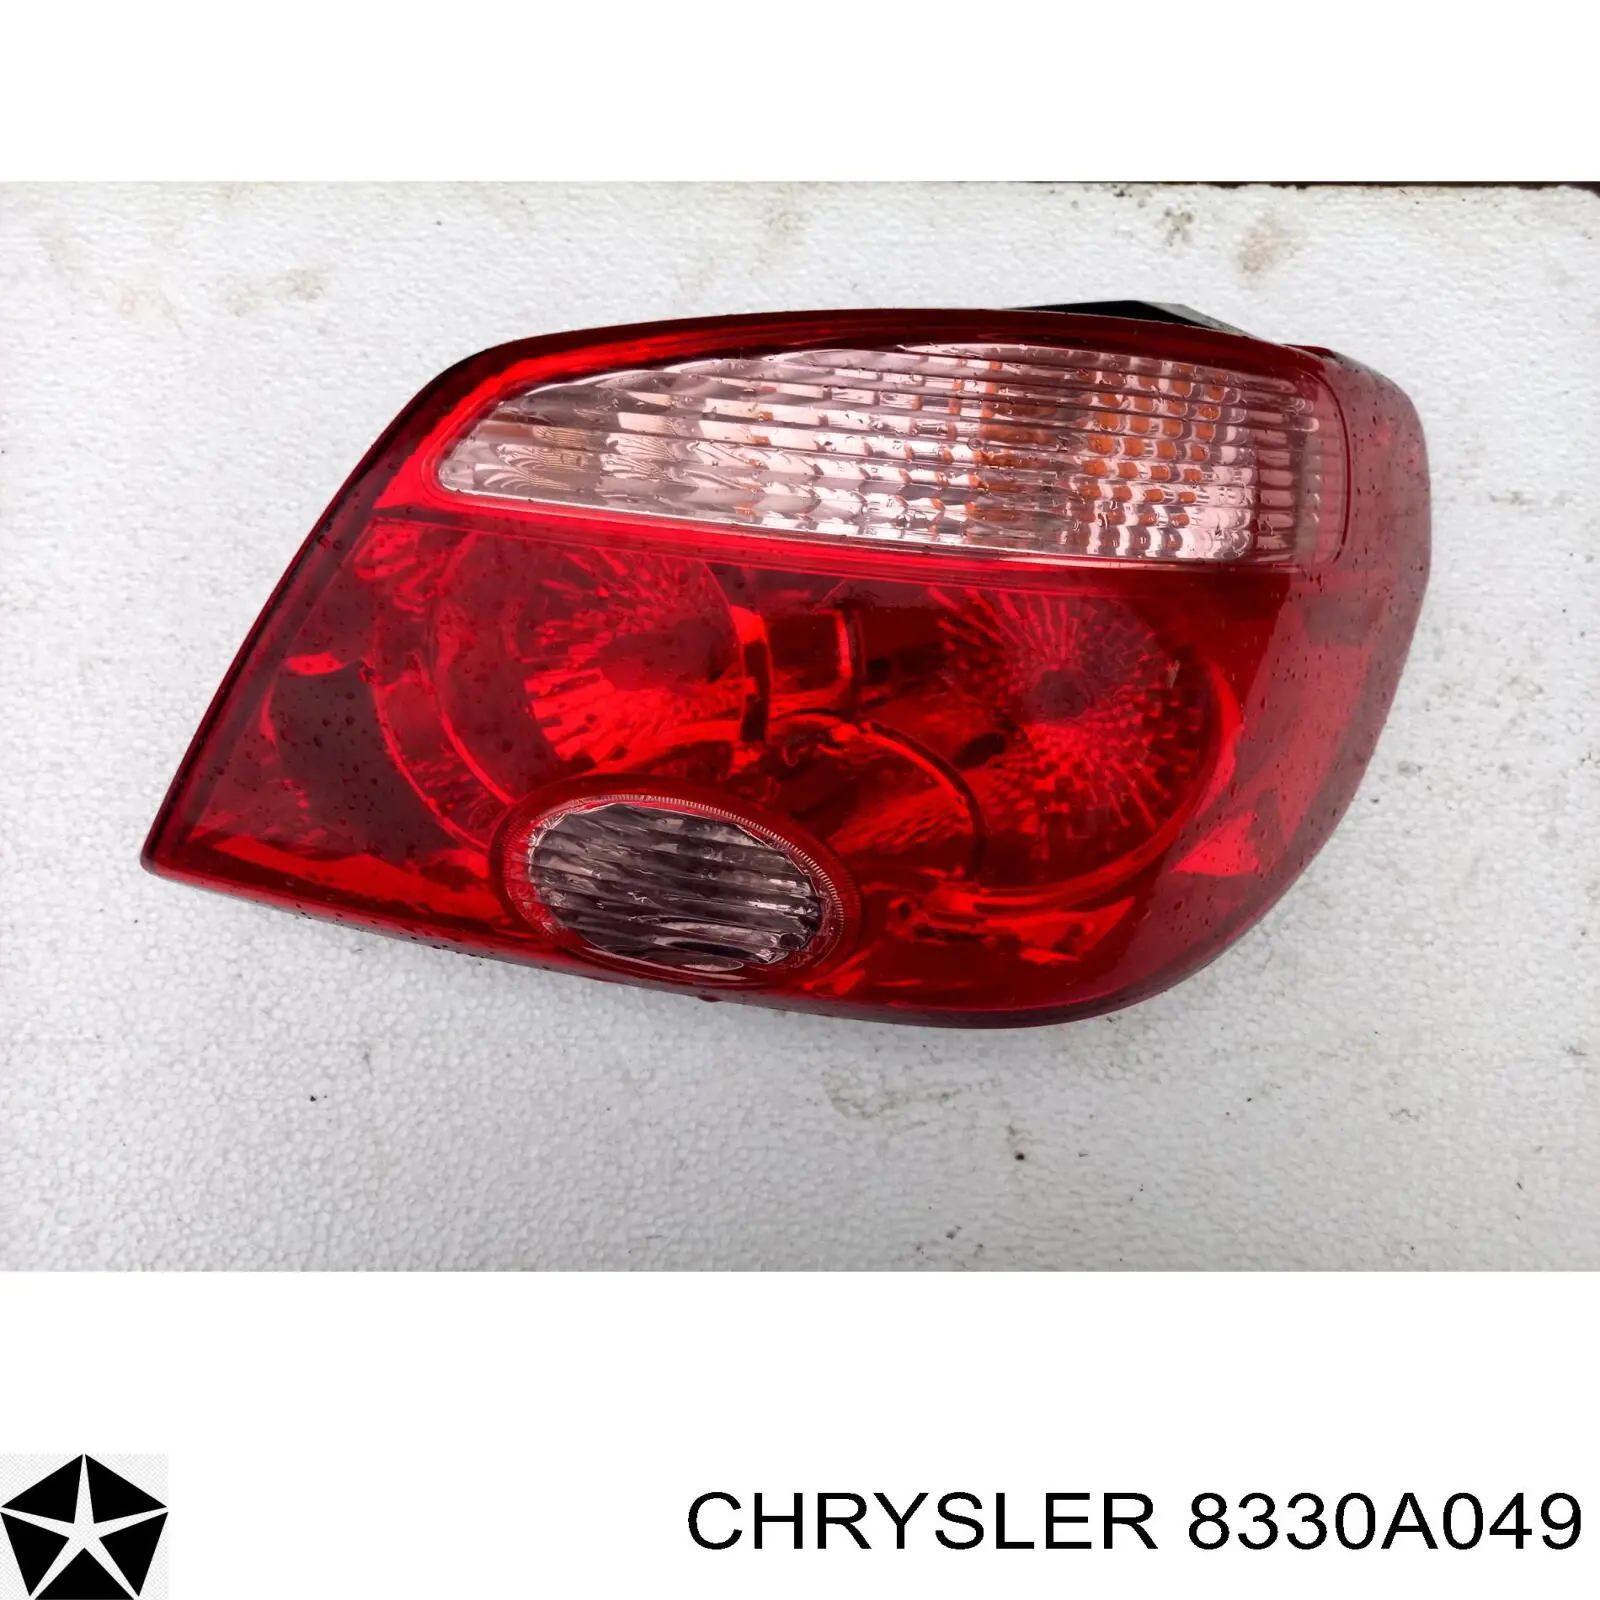 8330A049 Chrysler фонарь задний левый